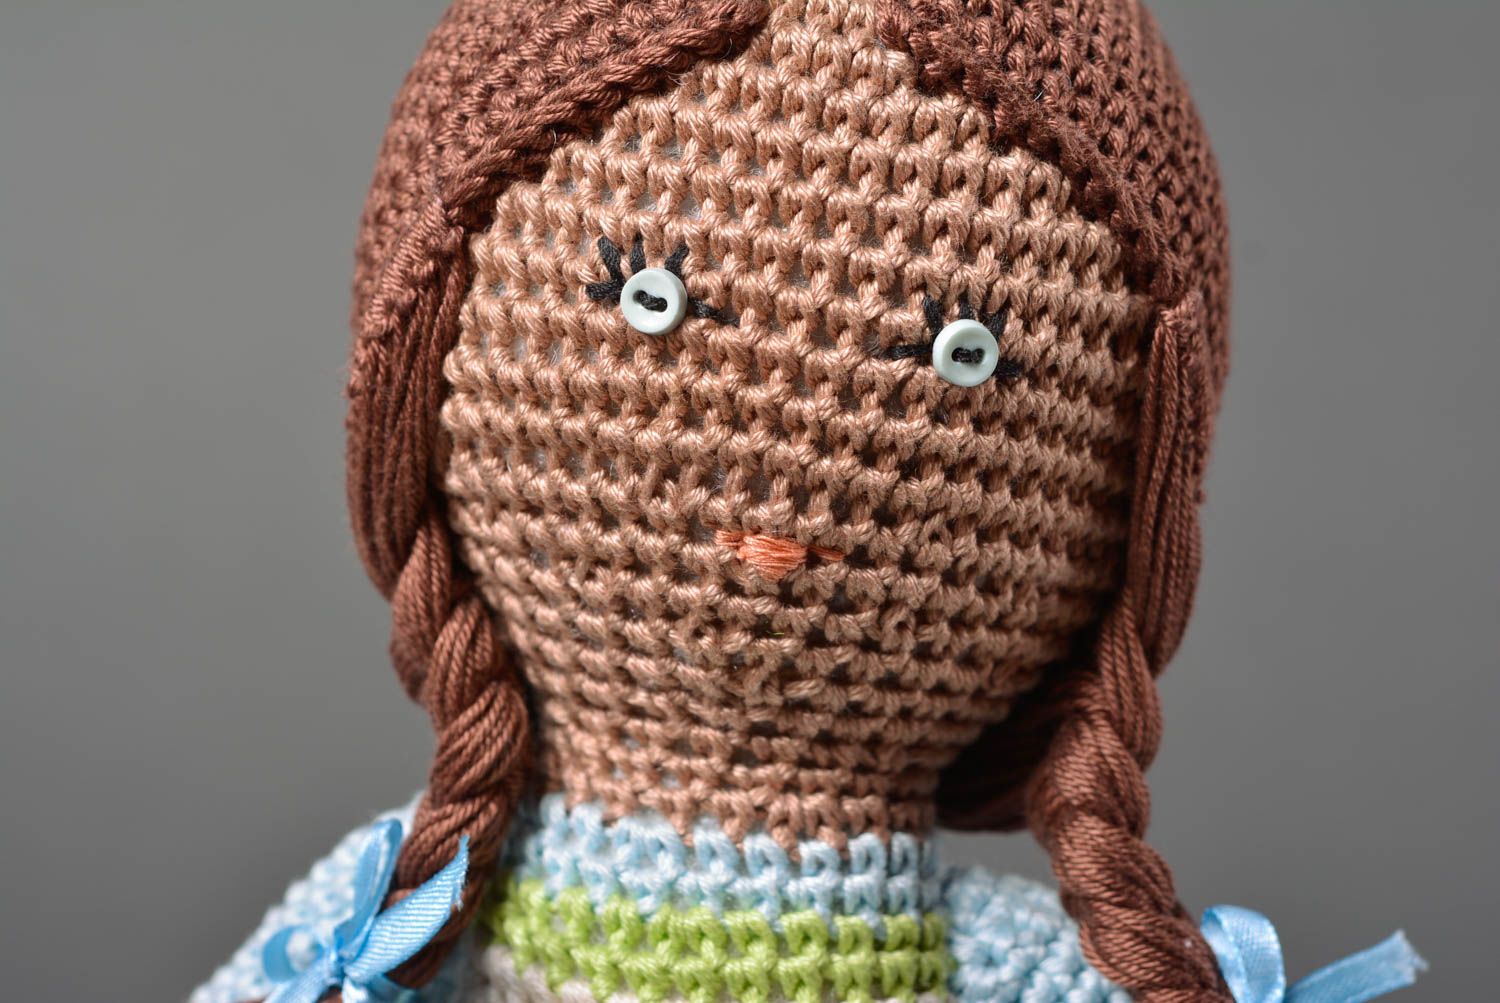 Handmade doll designer toy gift for children crocheted doll decor ideas photo 2